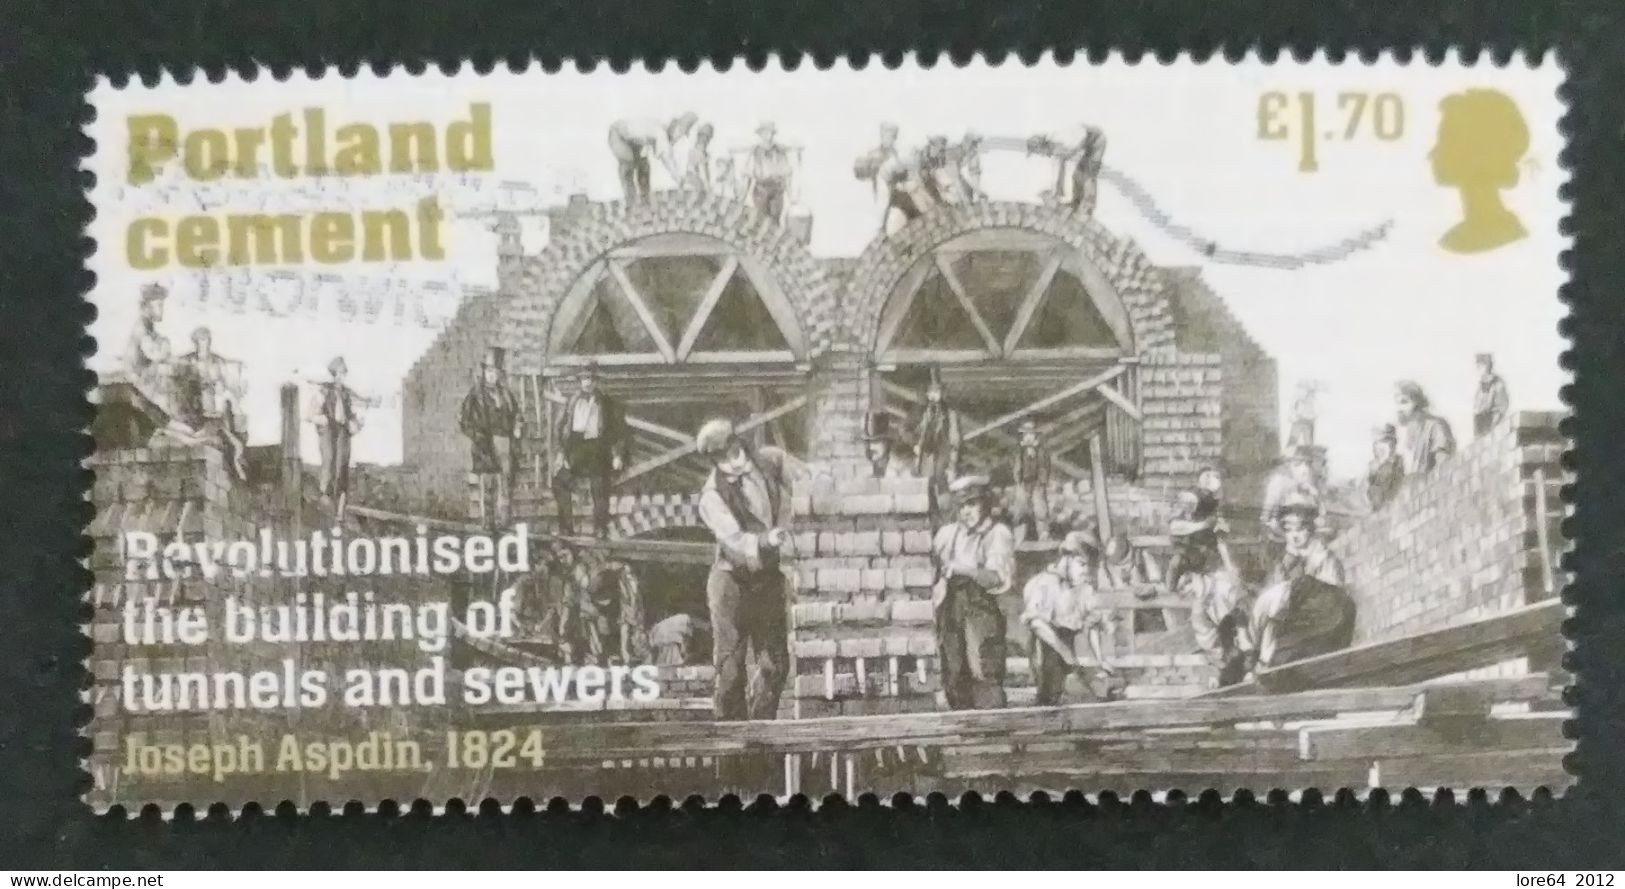 GRAN BRETAGNA 2021 - Used Stamps